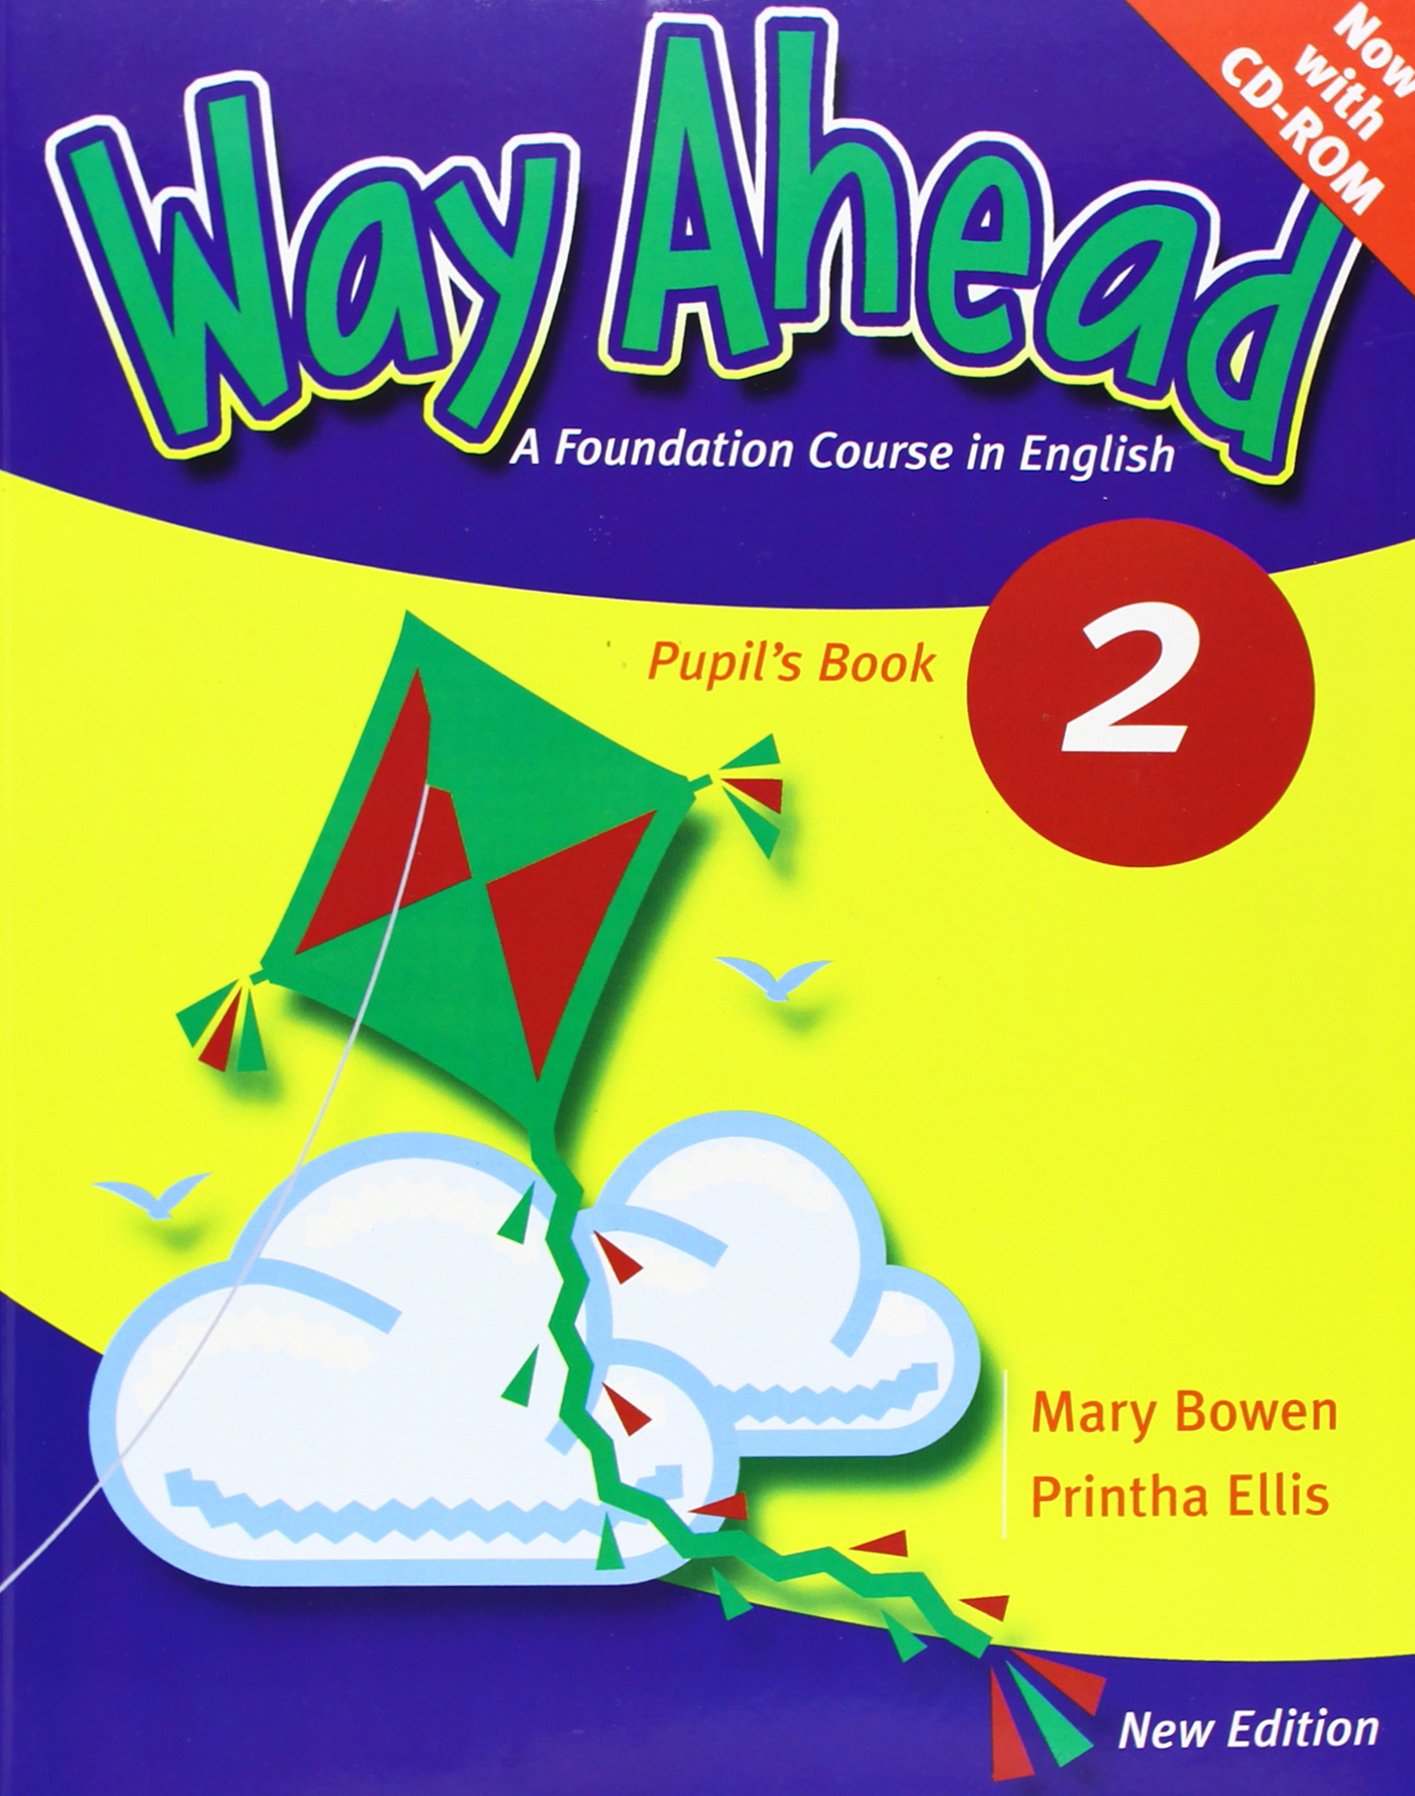 Way Ahead | Mary Bowen, Printha Ellis